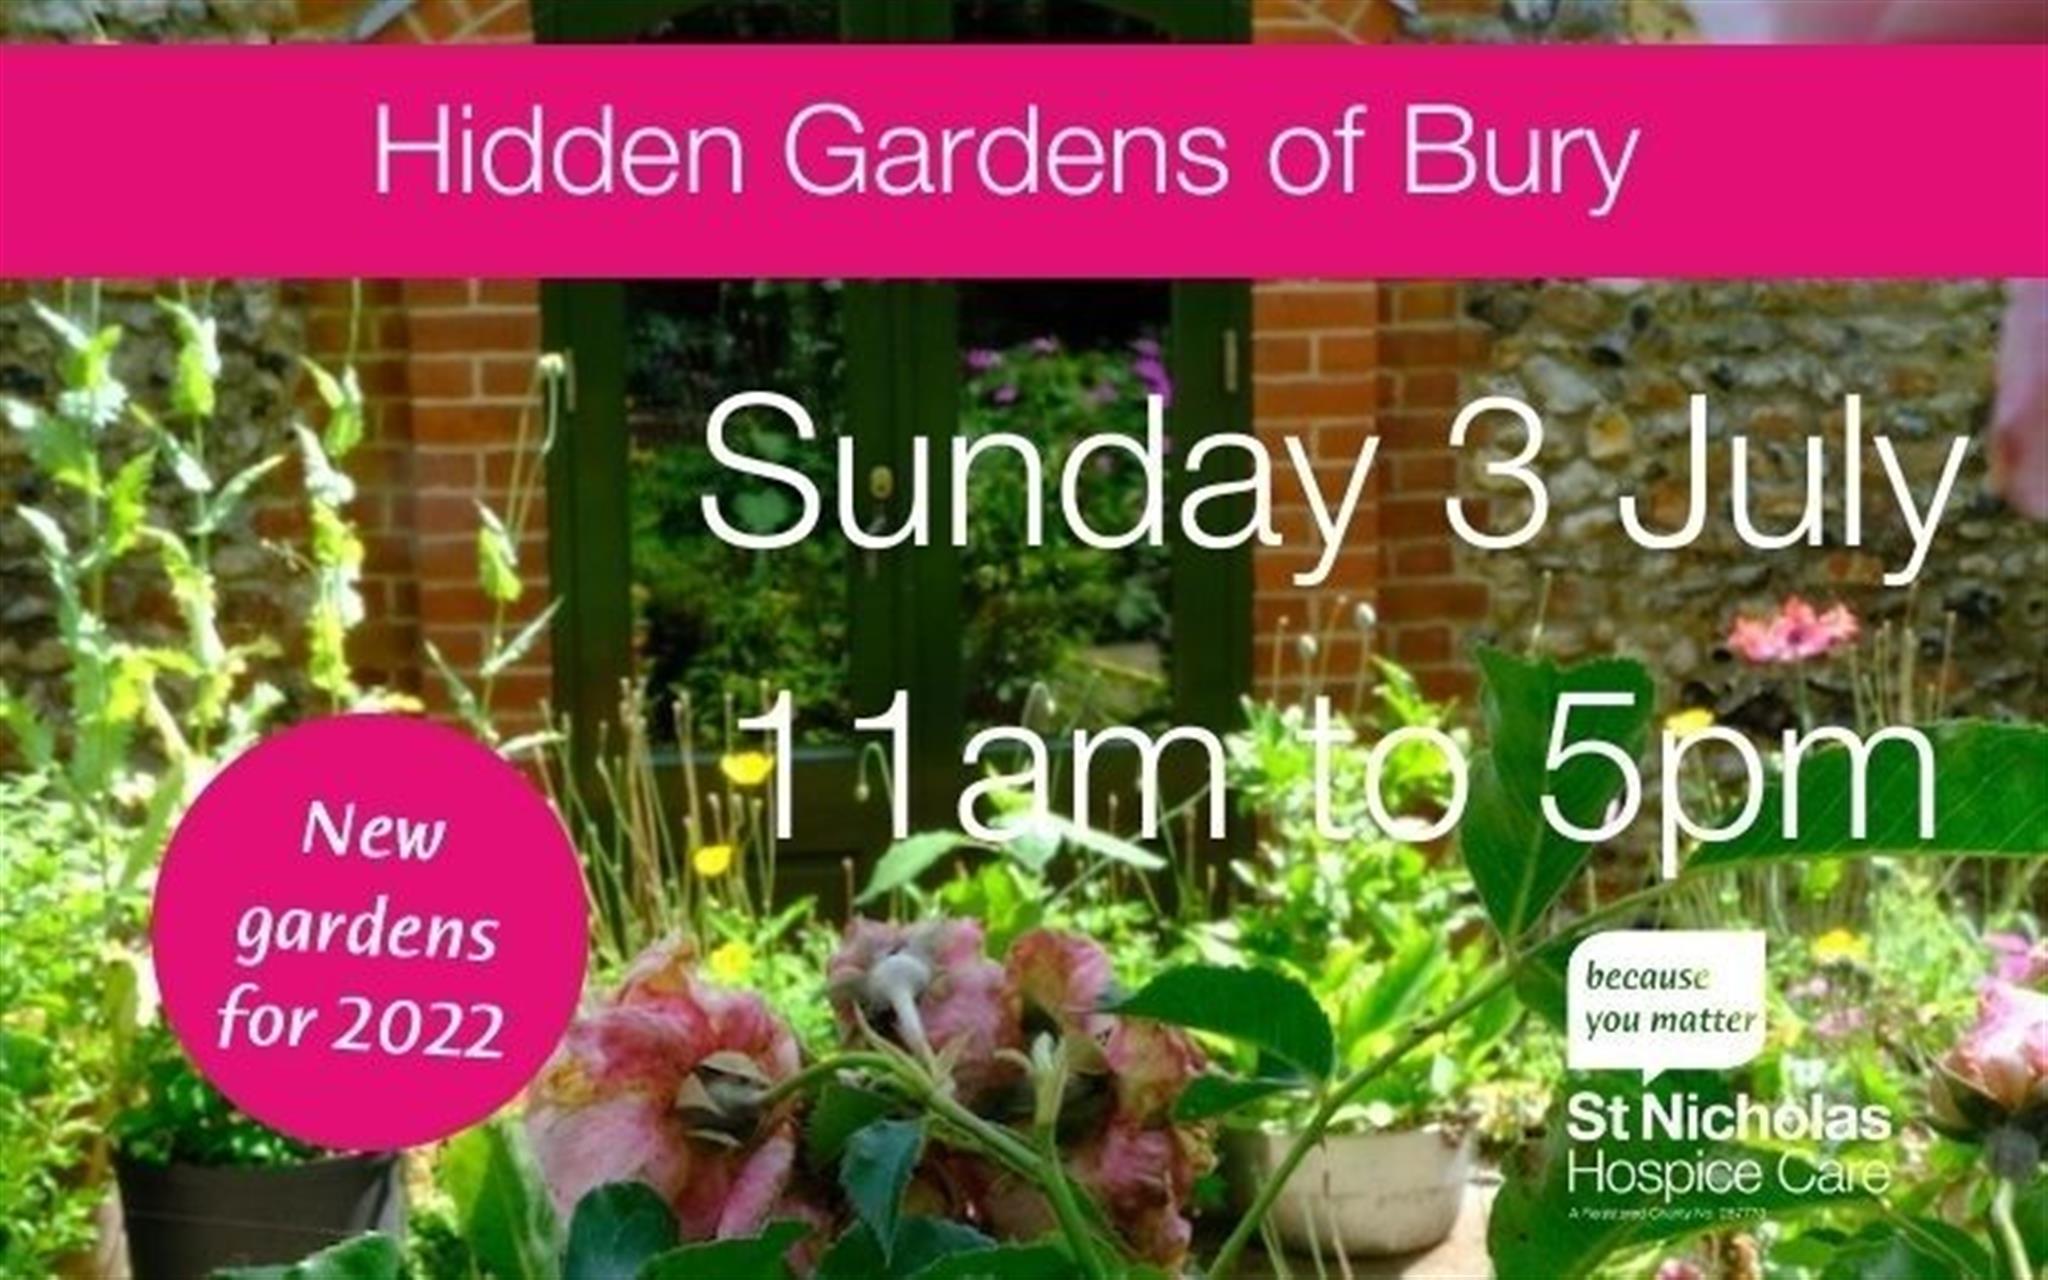 The Hidden Gardens of Bury image